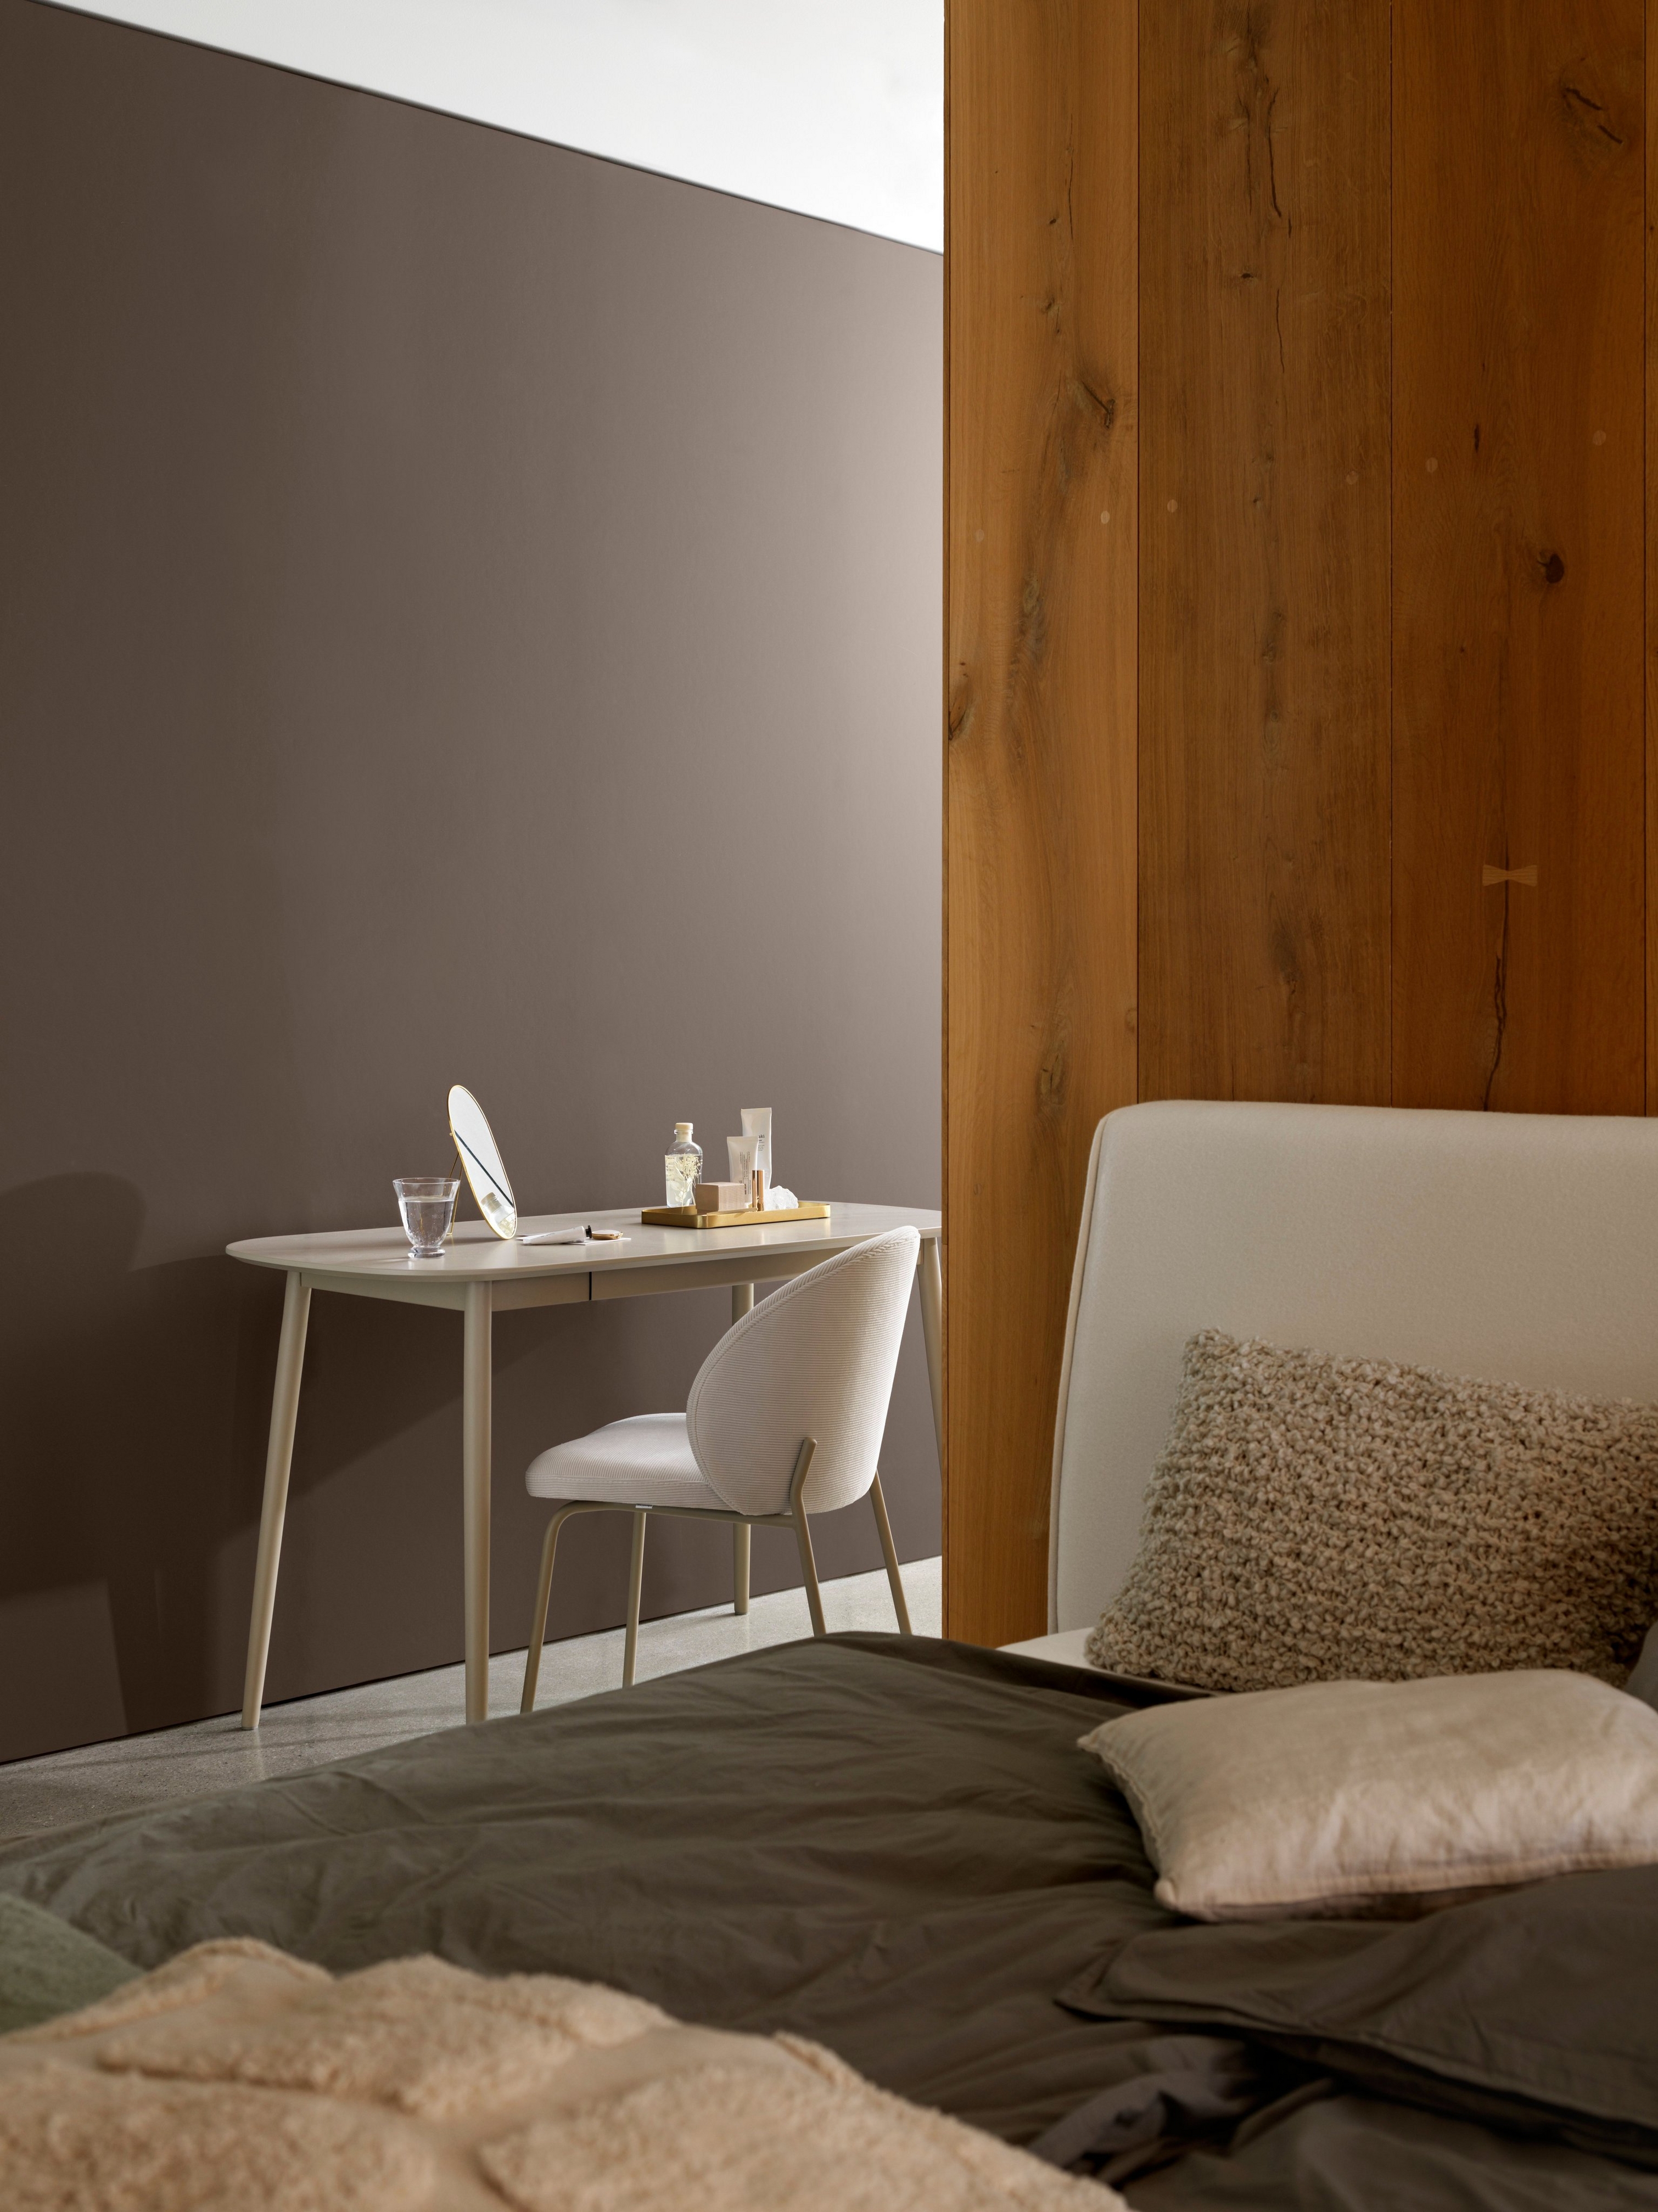 Canto de um quarto com uma secretária simples, cadeira e roupa de cama confortável junto a um painel de madeira.